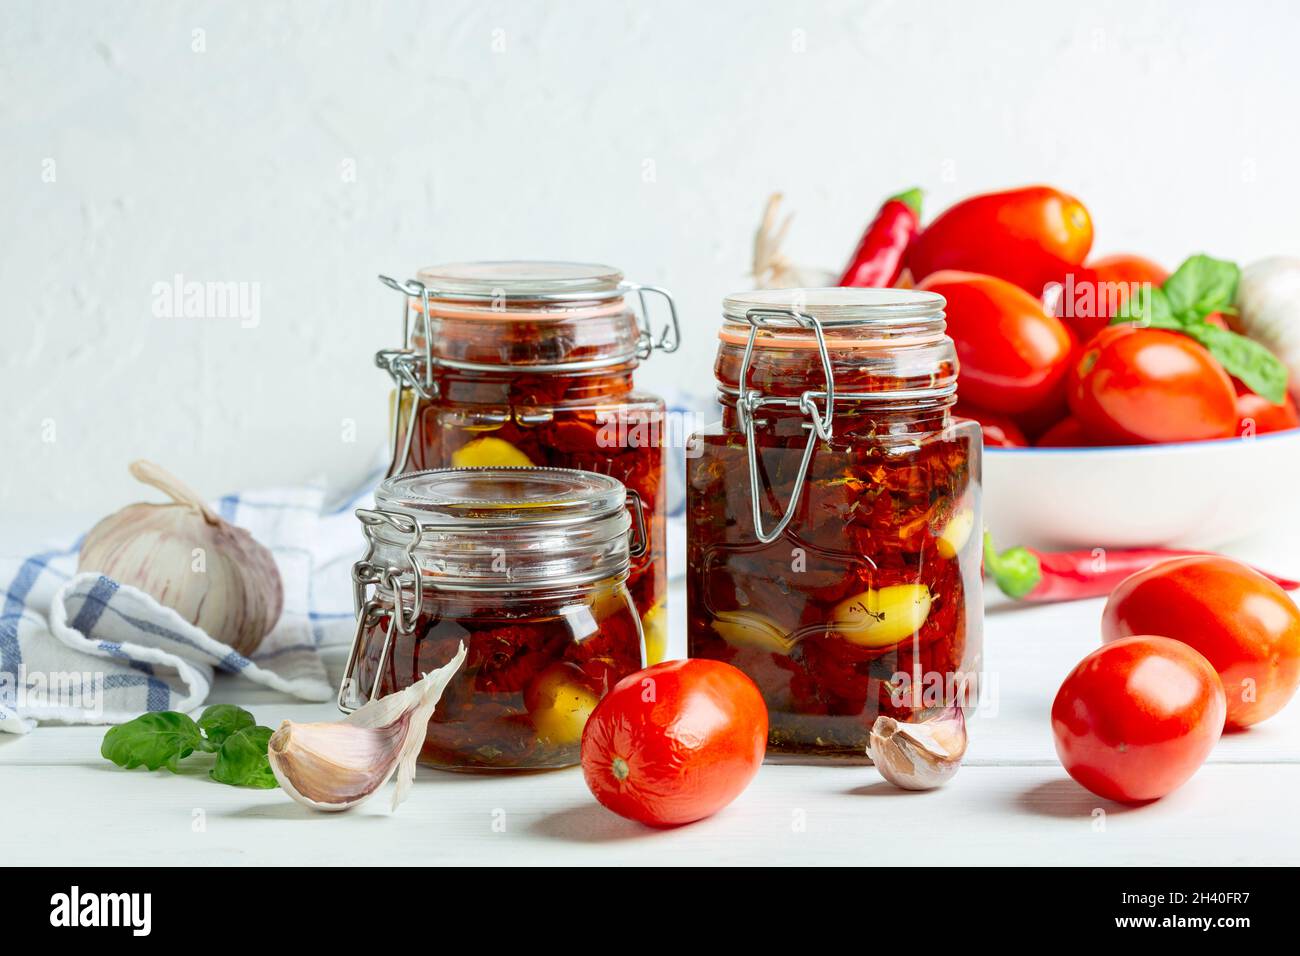 Tomates secos caseros con ajo y aceite de oliva en tarros de vidrio. Foto de stock